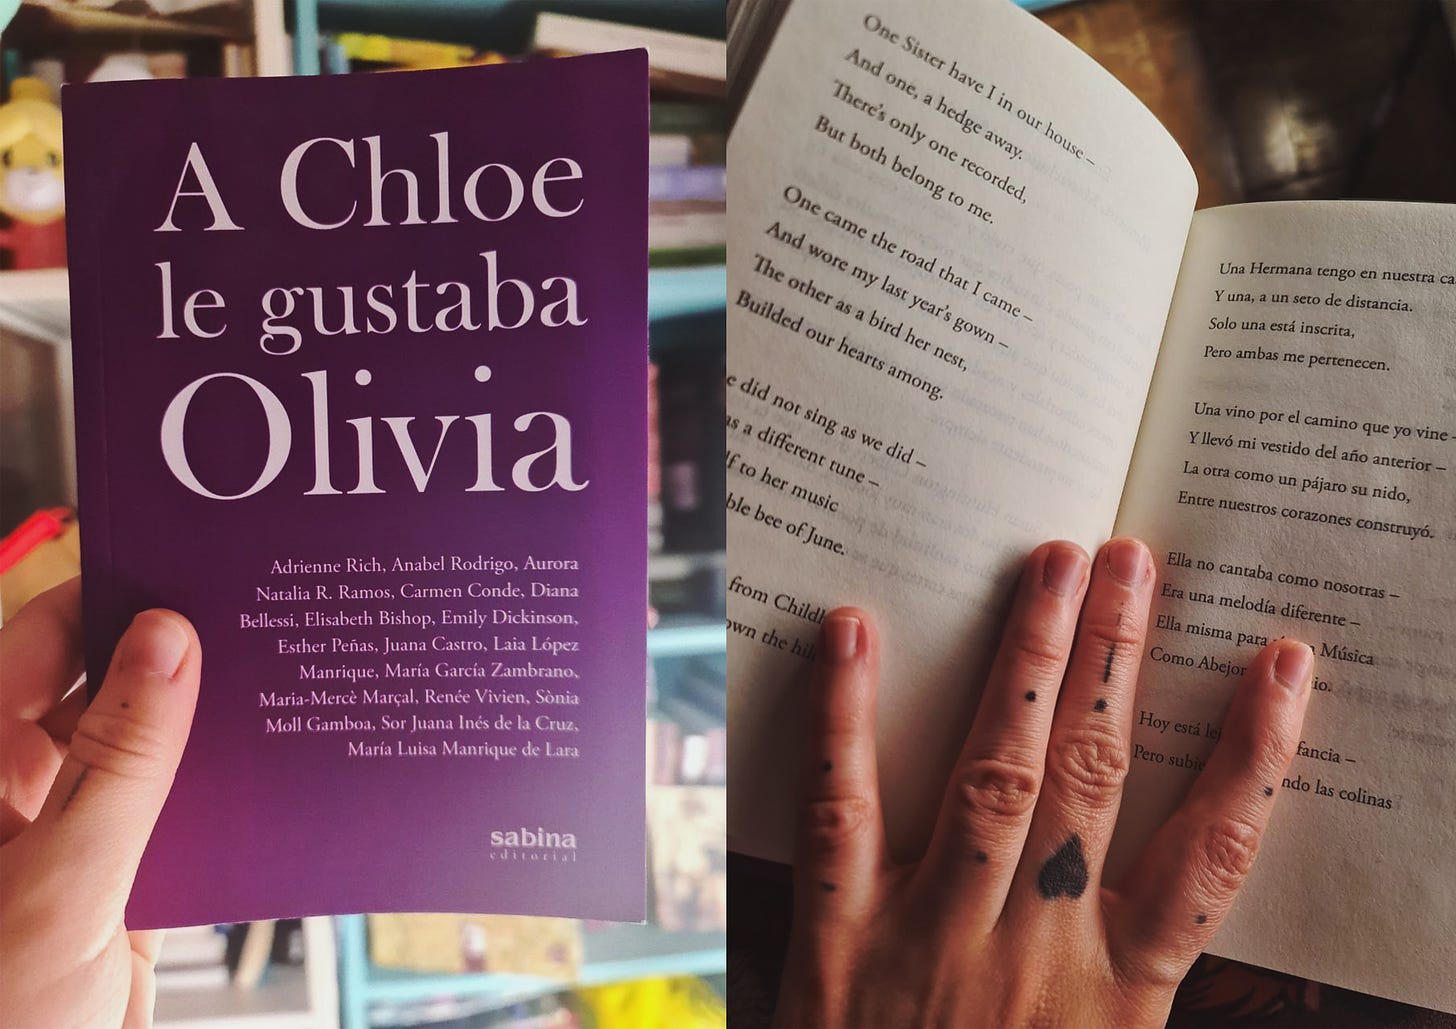 Dos fotografías. A la izquierda la portada del libro, a la derecha el libro abierto con un poema de Dickinson en inglés y español.